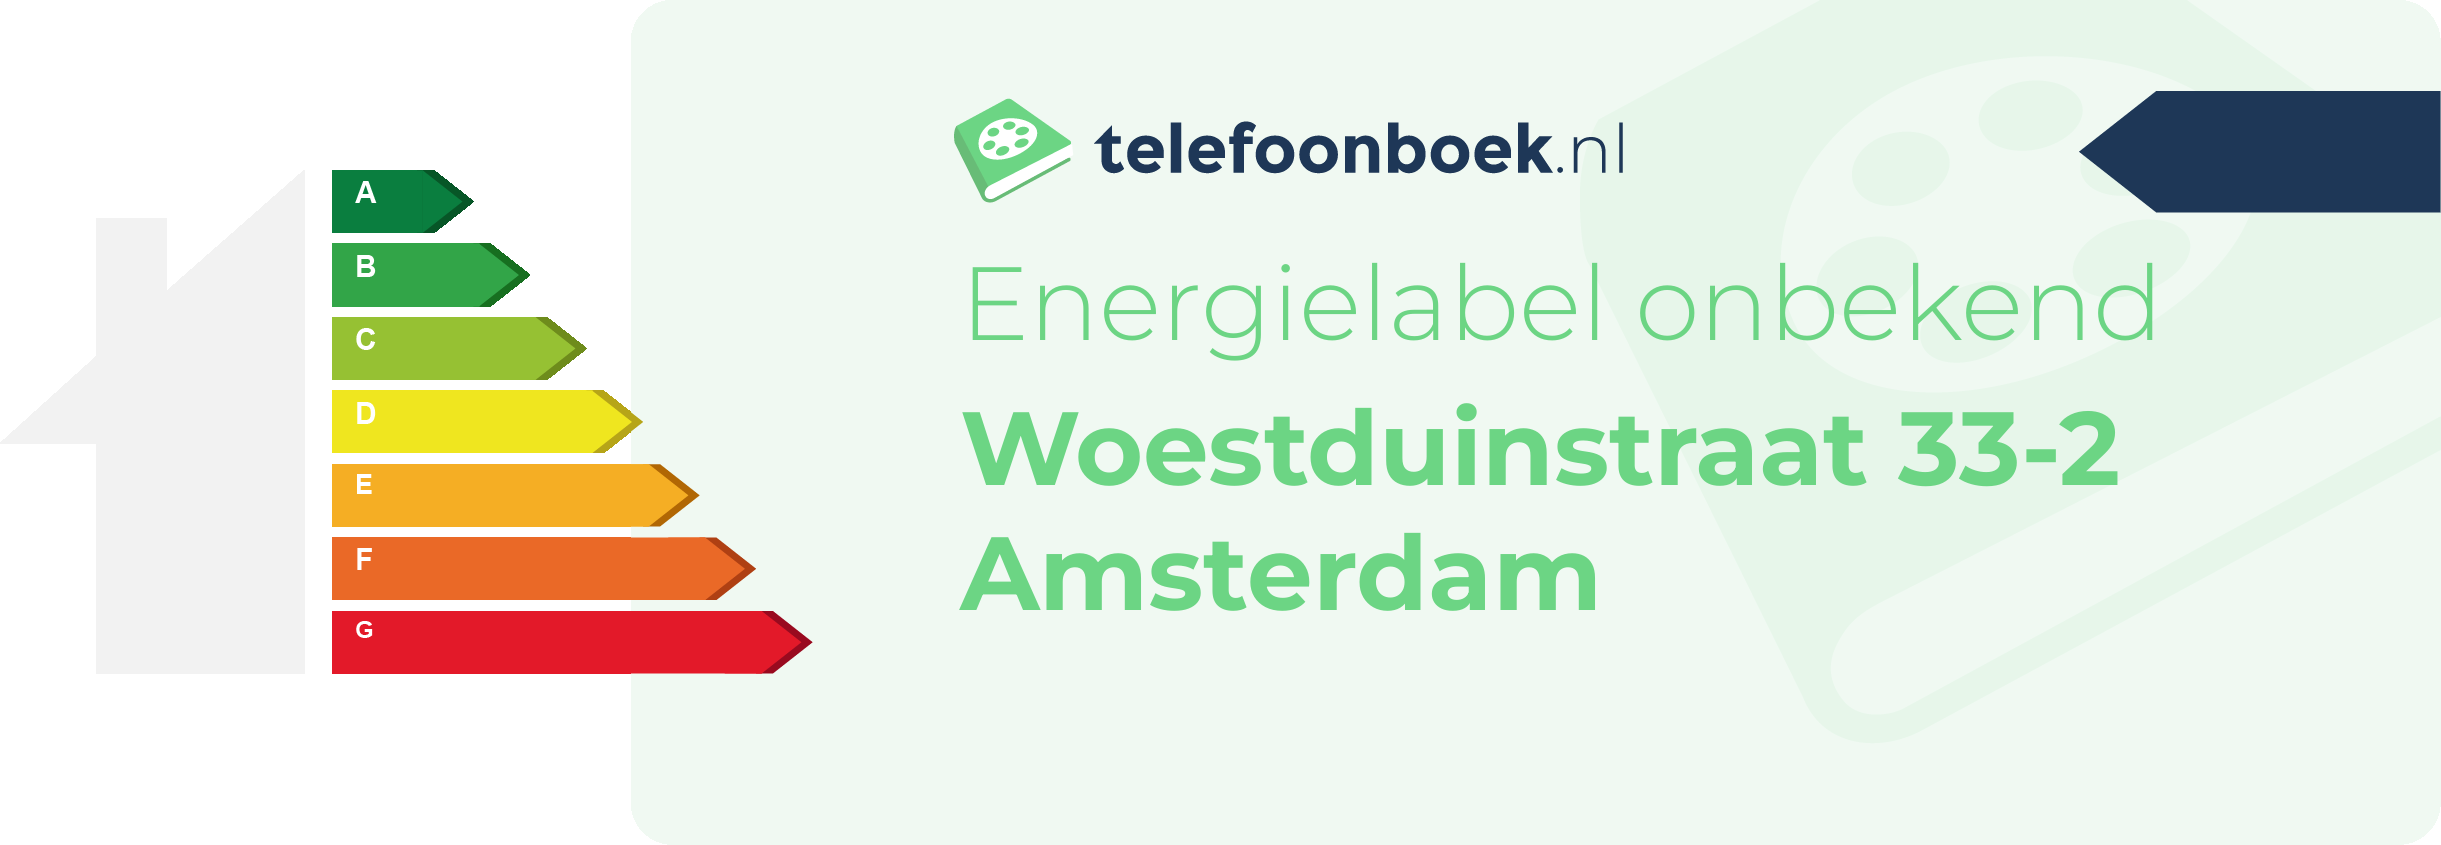 Energielabel Woestduinstraat 33-2 Amsterdam